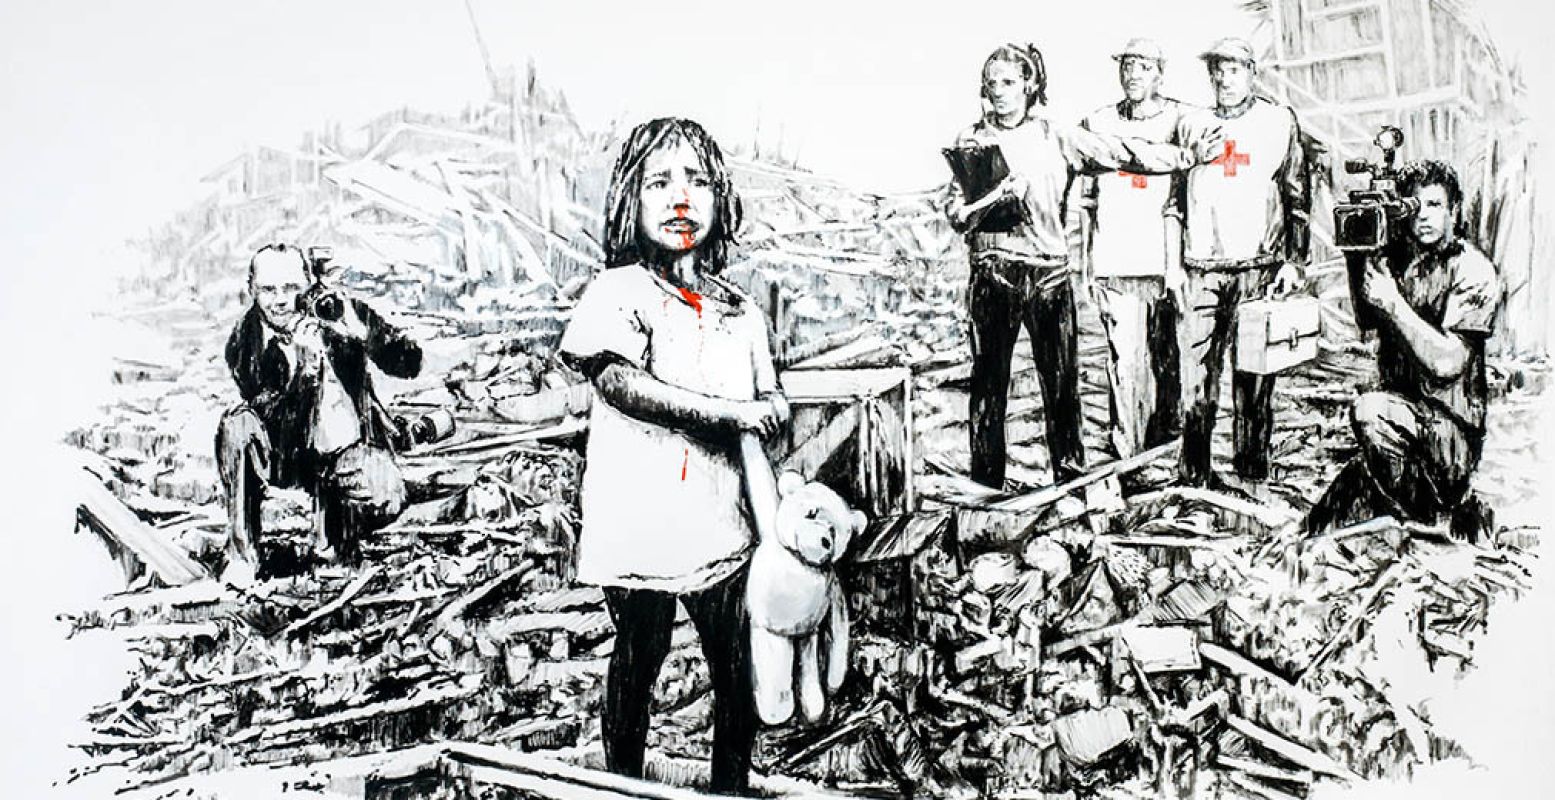 Het kunstwerk 'Media at War', door Banksy. Bron: THE ART OF BANKSY.